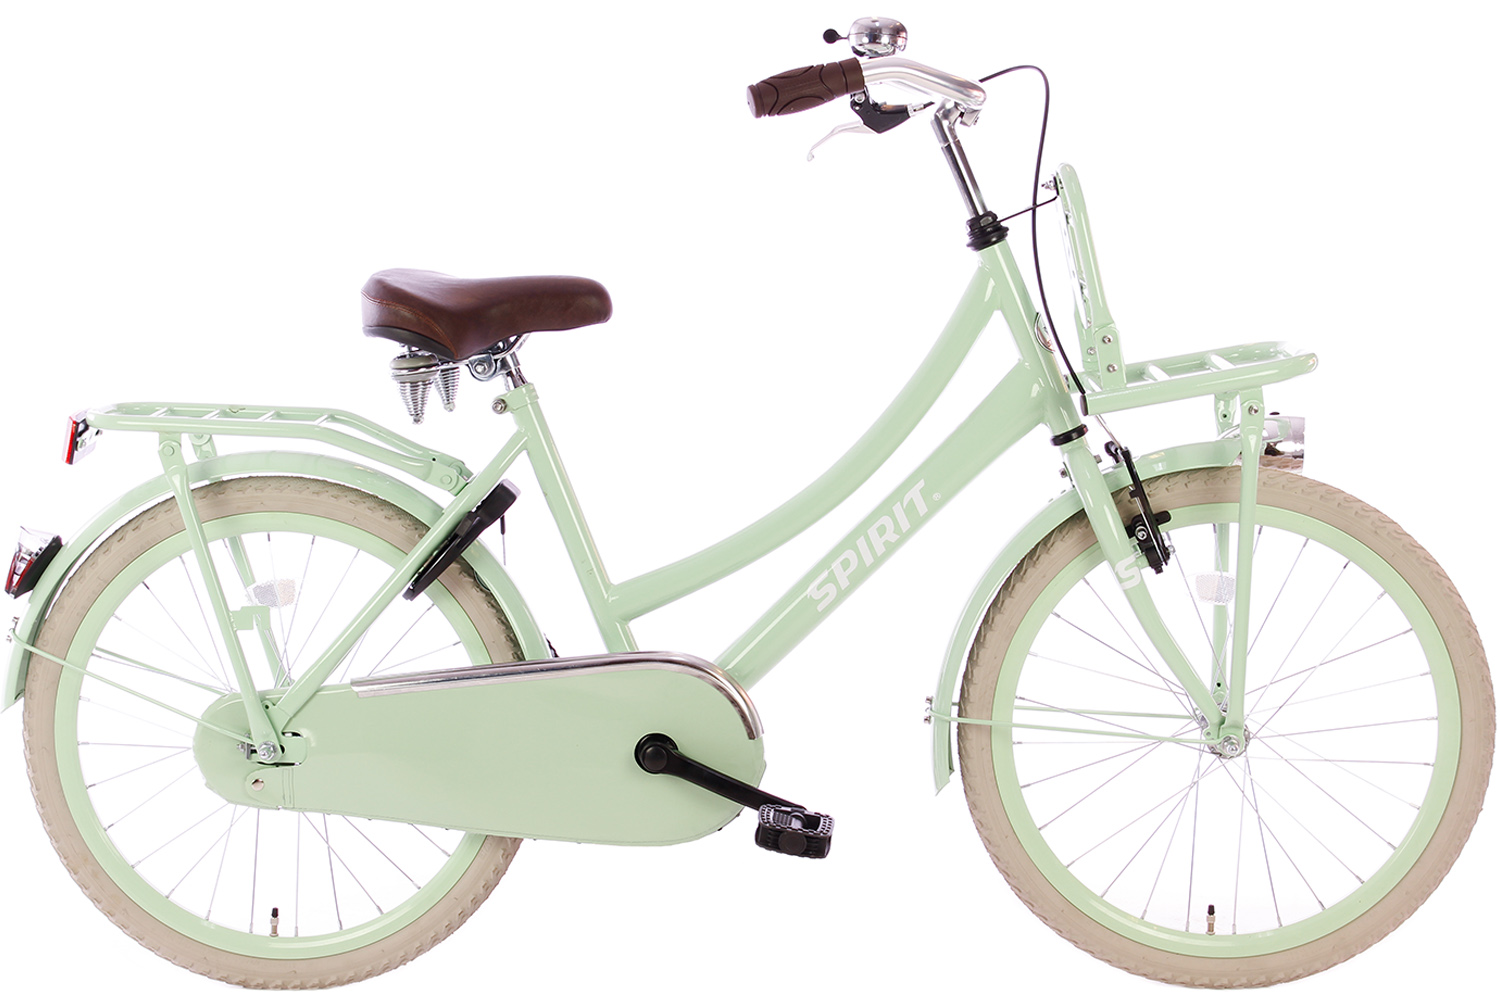 Gietvorm Wiskundige rust Spirit Cargo Groen 22 inch(wordt 100% rijklaar geleverd) - Bike 2 Bike